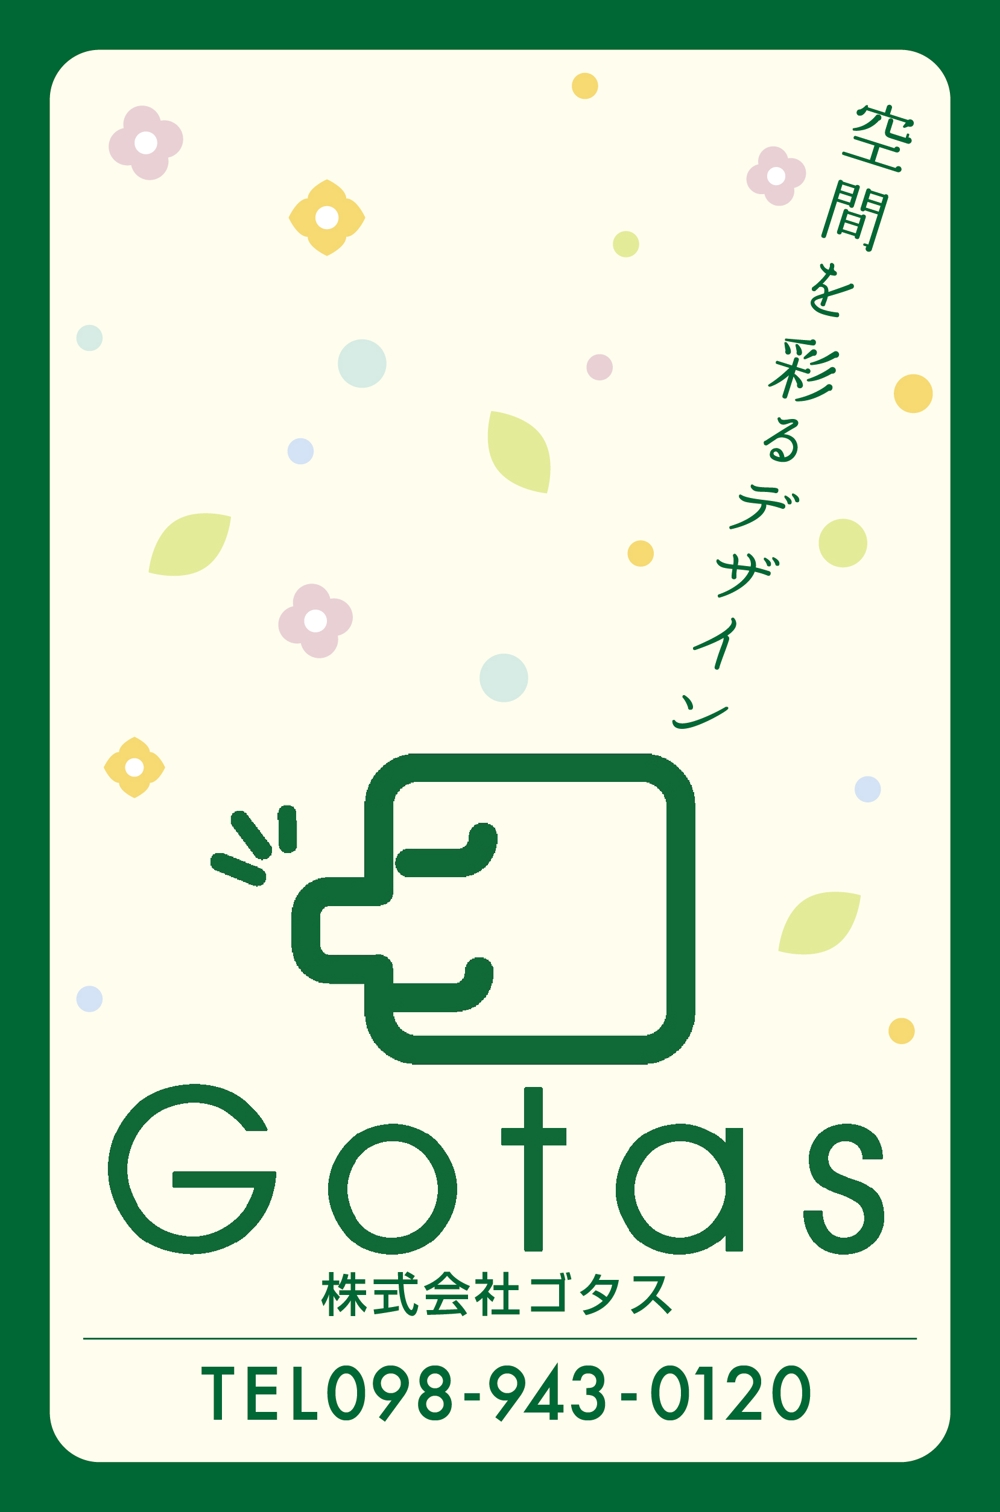 株式会社Gotasのシールデザイン